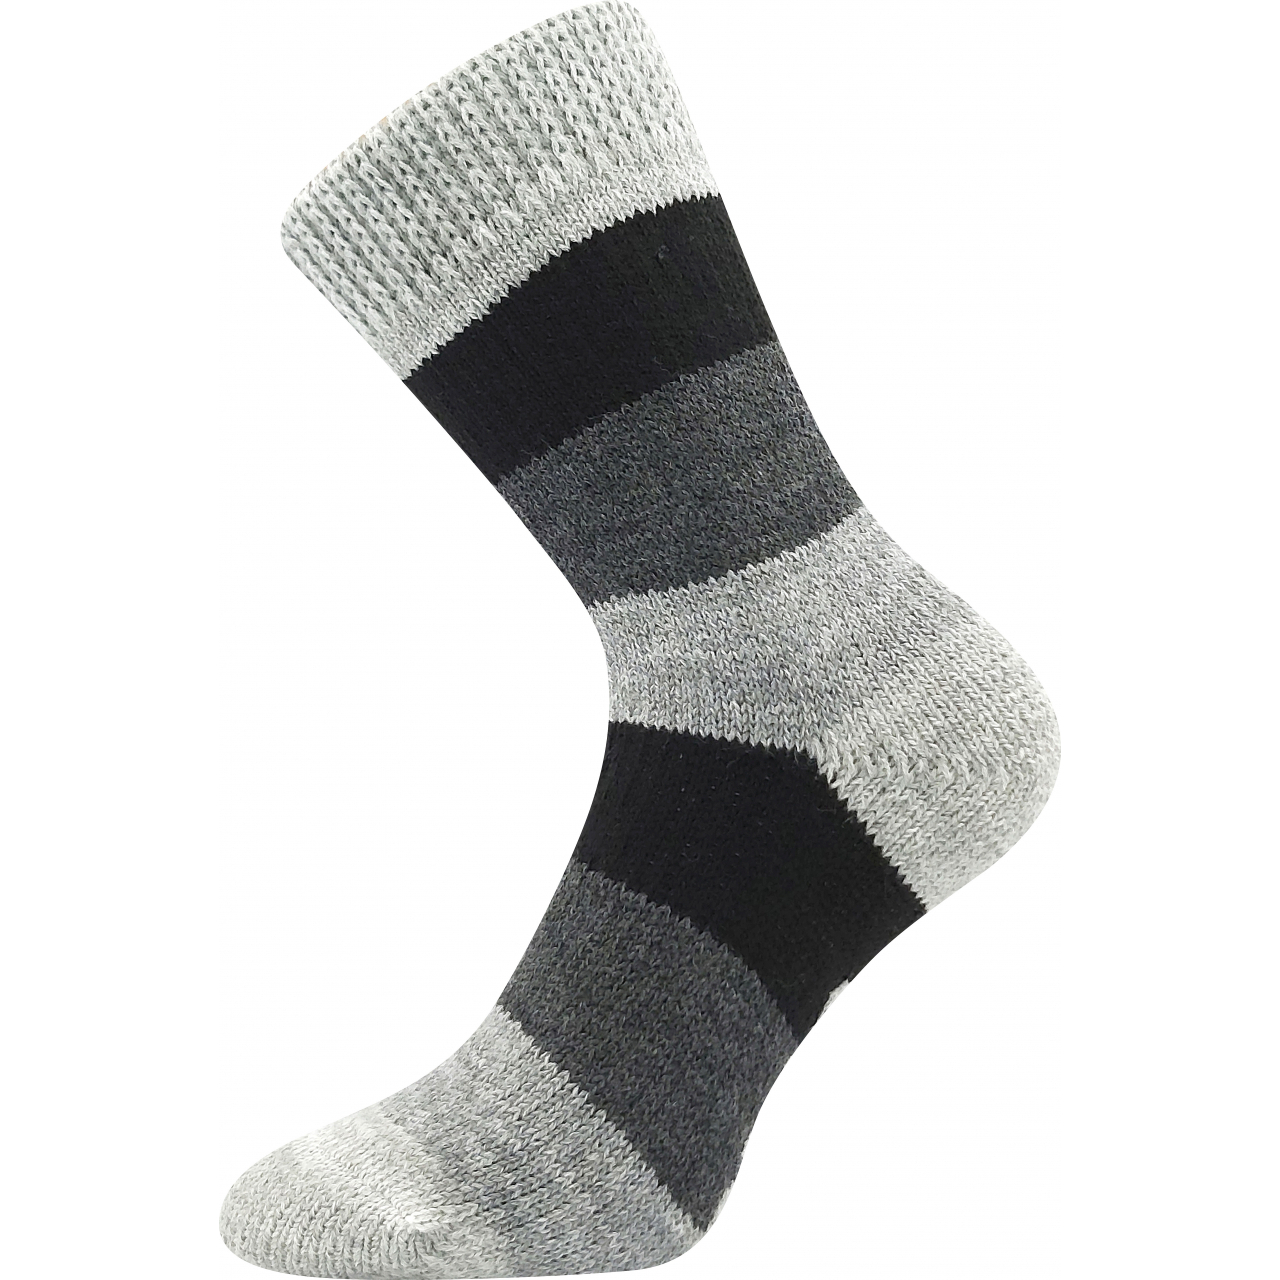 Ponožky spací unisex Boma Spací Pruh - šedé-černé, 35-38